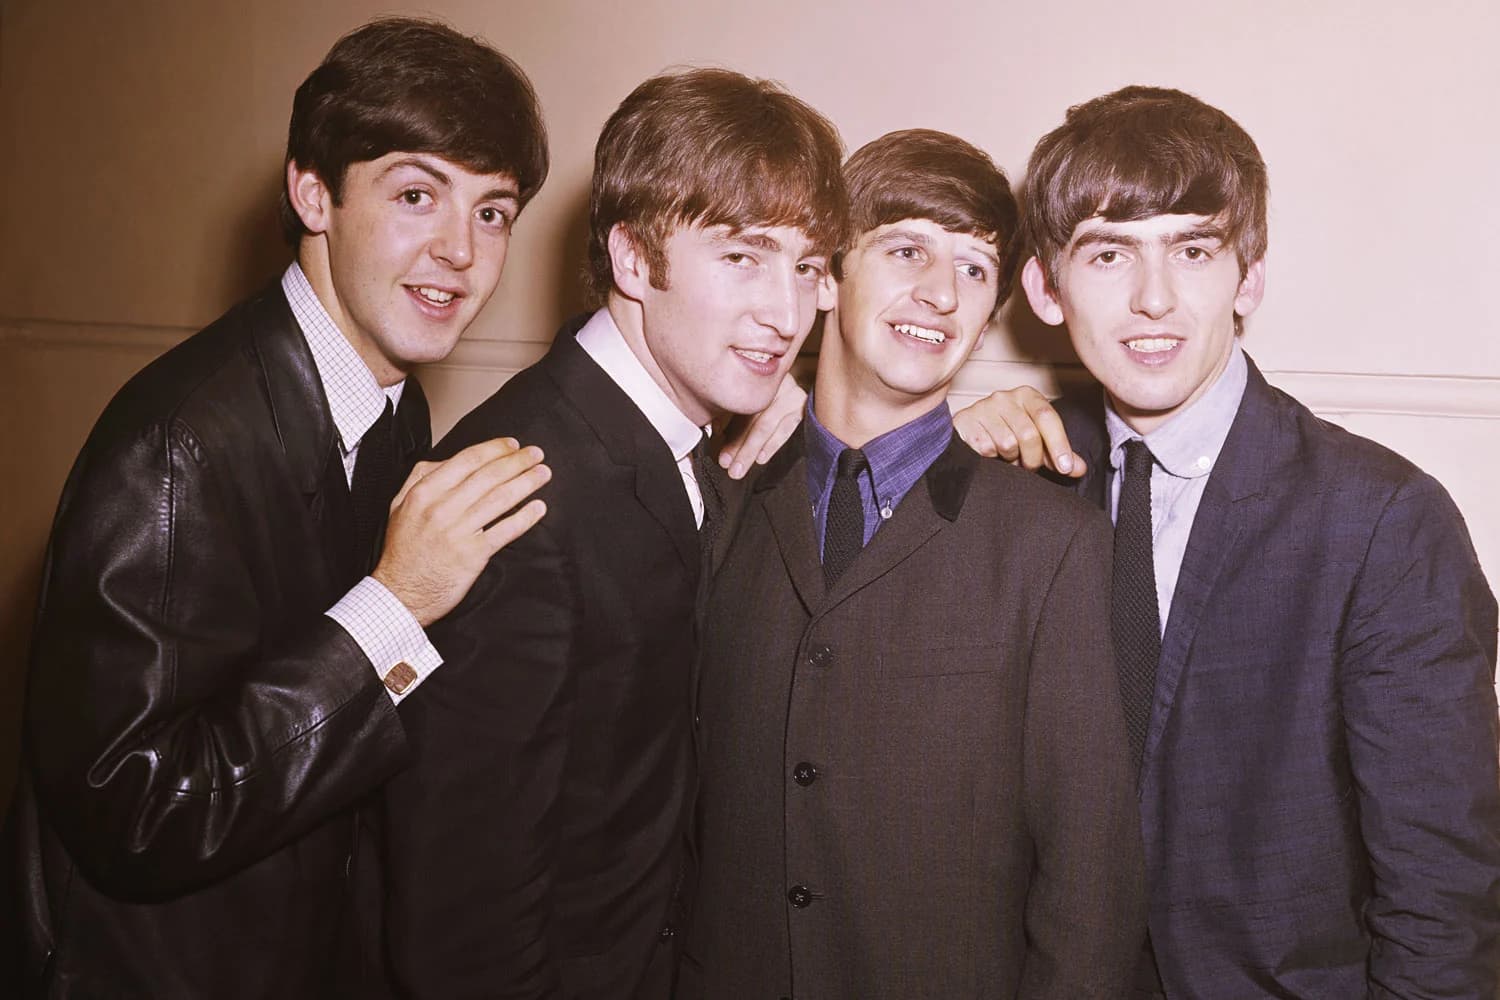 Группа "The Beatles" – состав, фото, новости, песни